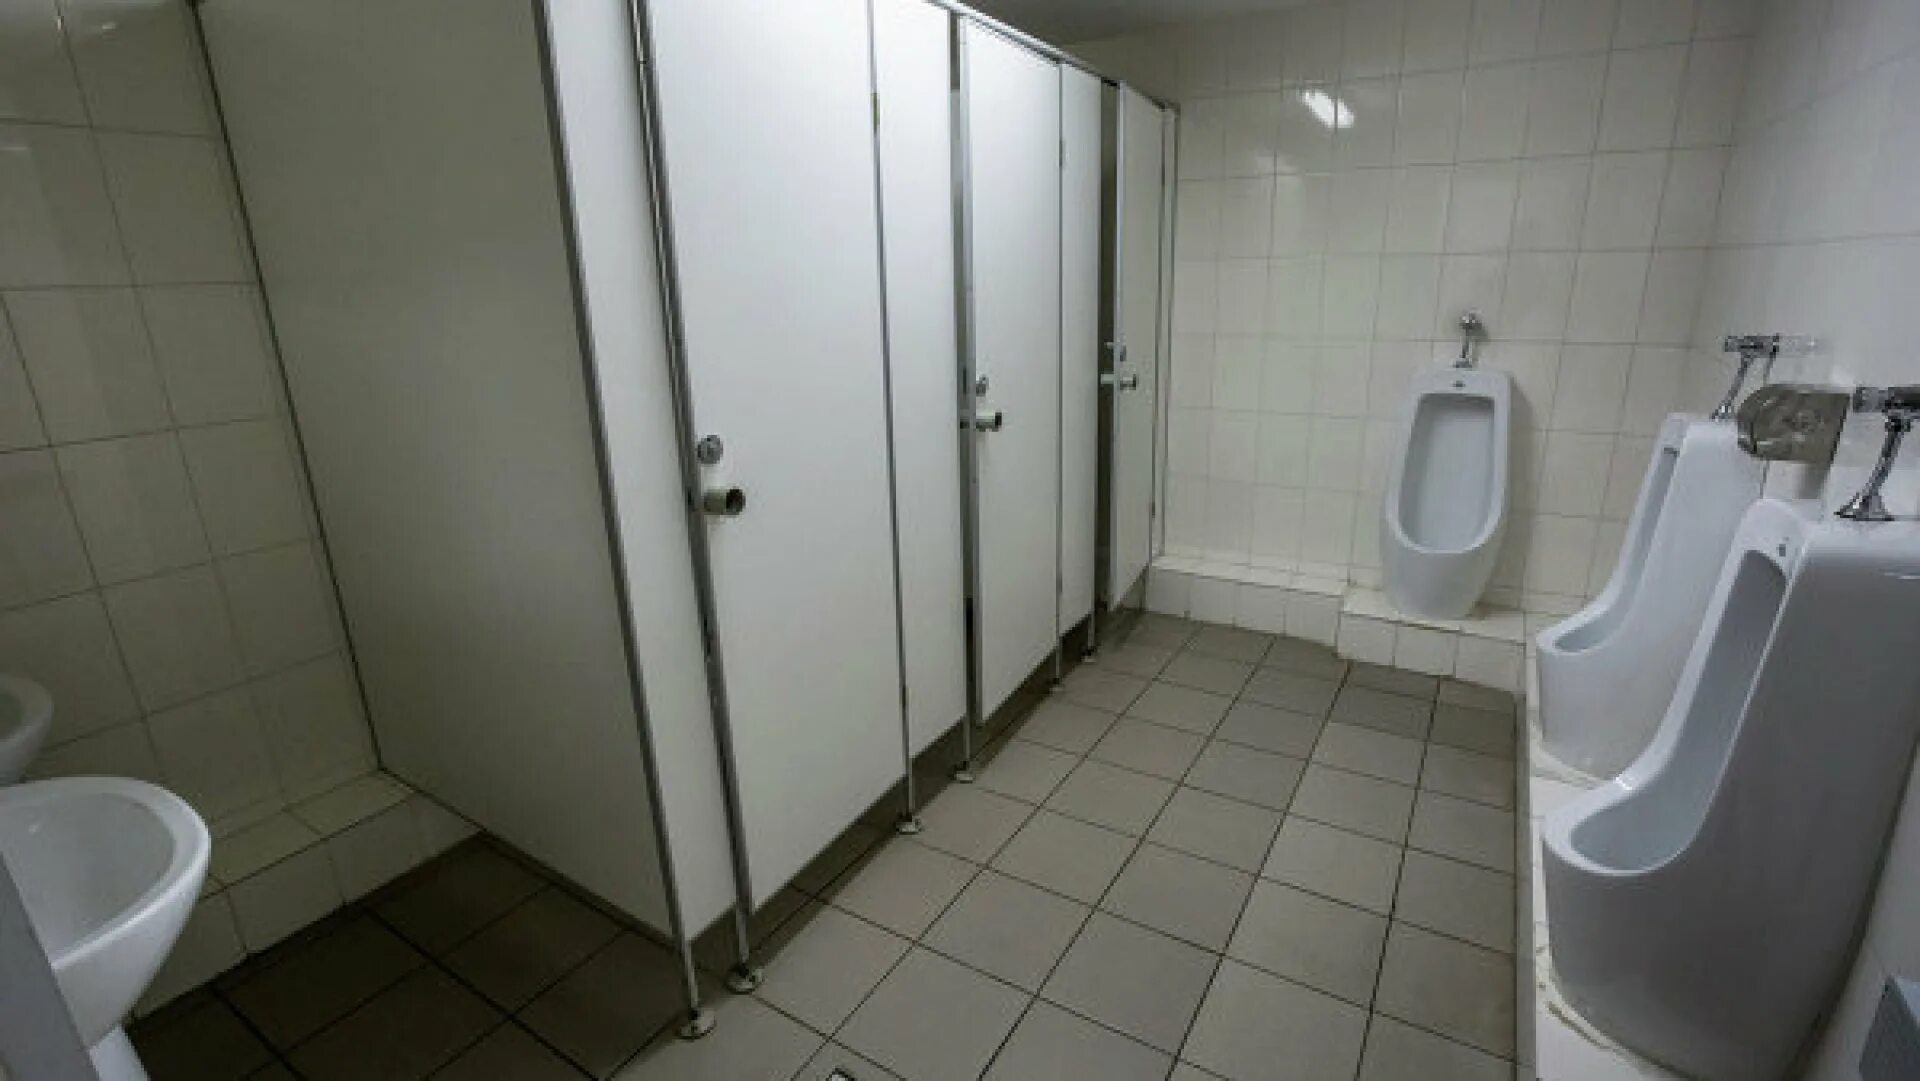 Должны ли туалеты для посетителей быть оборудованы. Санузел на предприятии. Общественный туалет. Мужские кабинки туалета. Общественные туалетные кабинки.